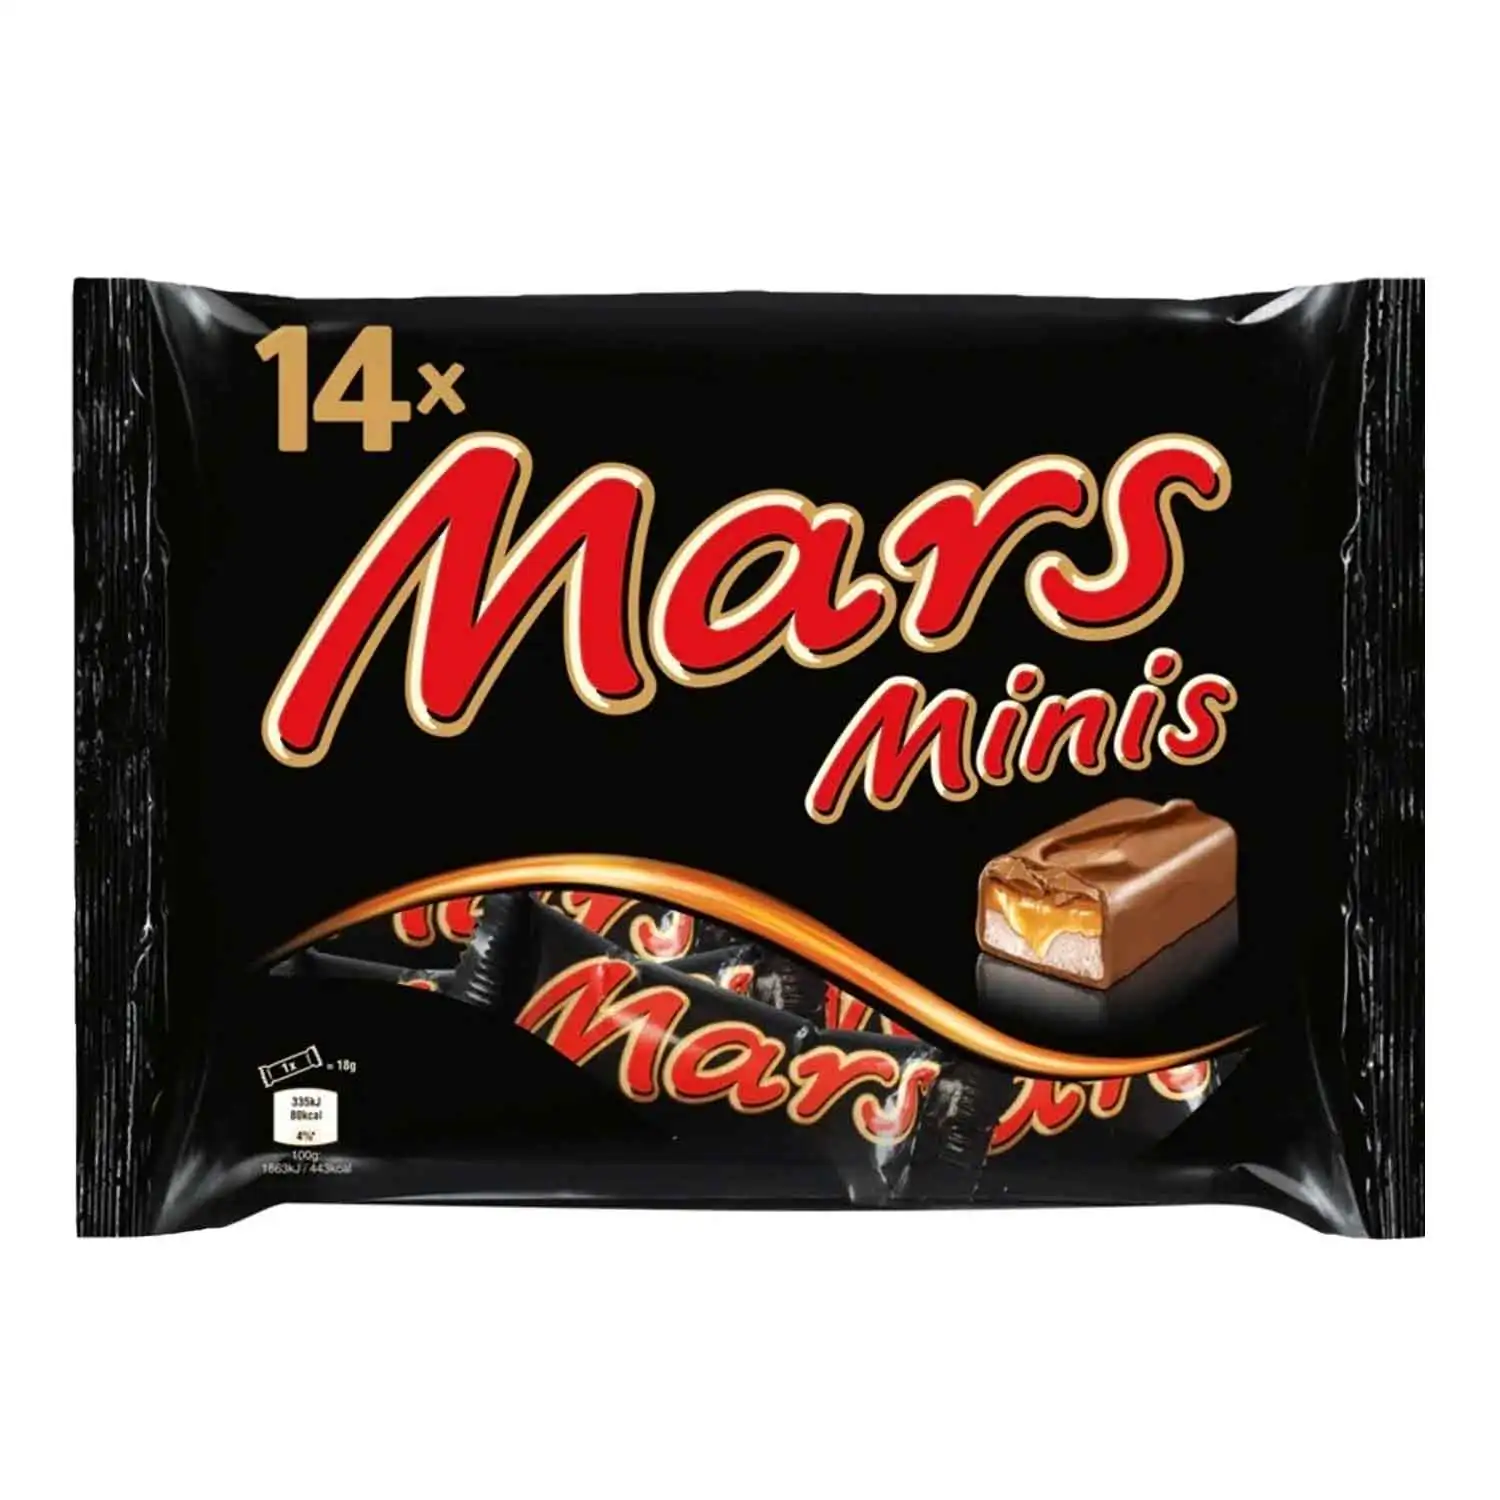 Mars minis 275g - Buy at Real Tobacco